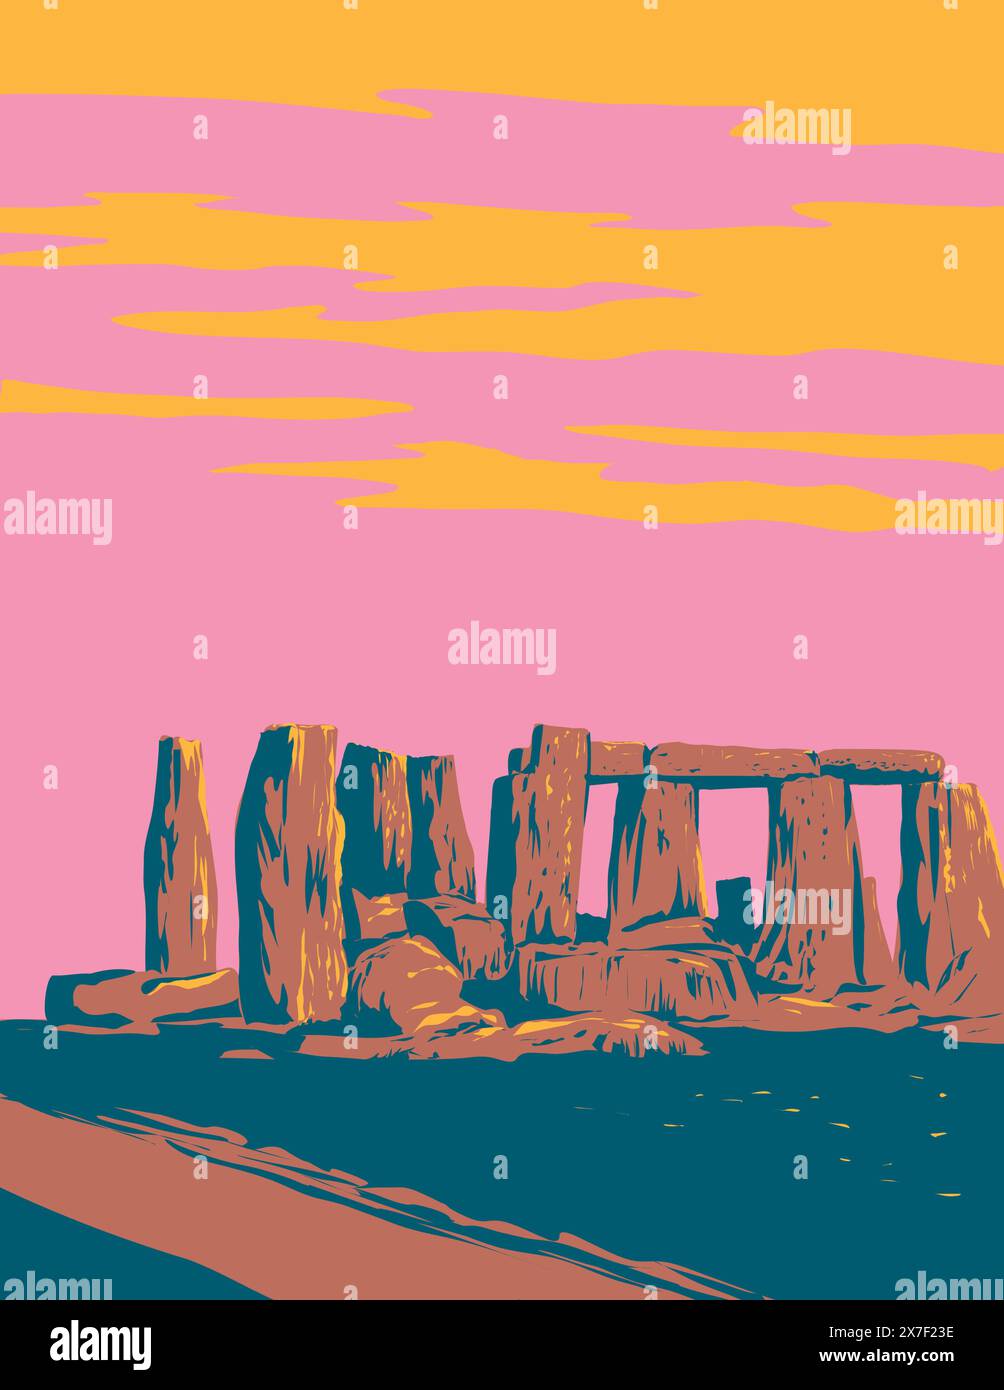 WPA poster art di Stonehenge, un monumento preistorico a Salisbury Plain nel Wiltshire, in Inghilterra, nel Regno Unito e nelle isole britanniche Illustrazione Vettoriale